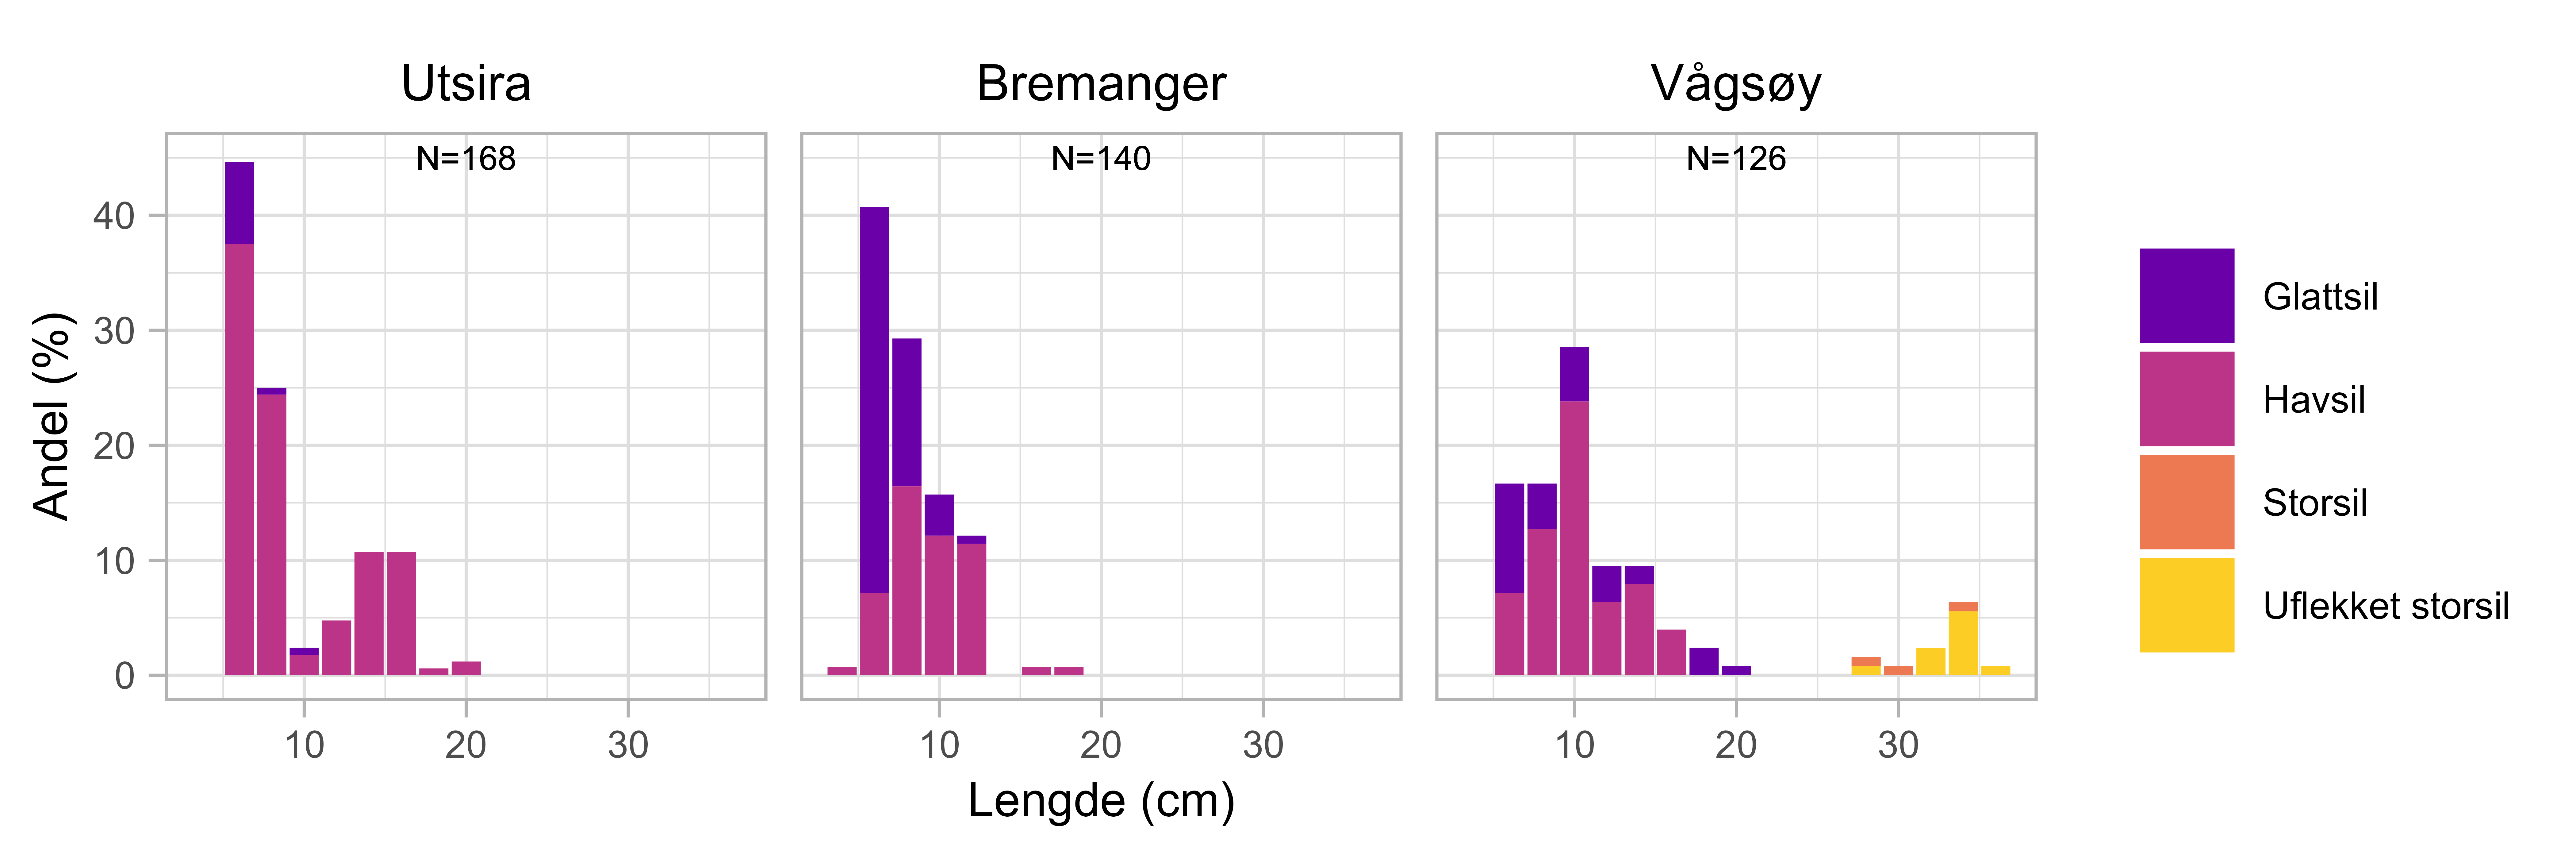 Figuren viser tre stolpediagram med lengdefordelinger av sil-arter i prosent, per tobisfelt. Et diagram for hver av tobisfeltene (totalprøvemengde N er oppgitt). Utsira (N=168), Bremanger (N=140) og Vågsøy (N=126). X-aksene viser lengde (0-40 cm) og y-aksene viser andel (0-40 %). Stolpene har farger som representerer glattsil (lilla), havsil (rosa), storsil (oransje) og uflekket storsil (gul).